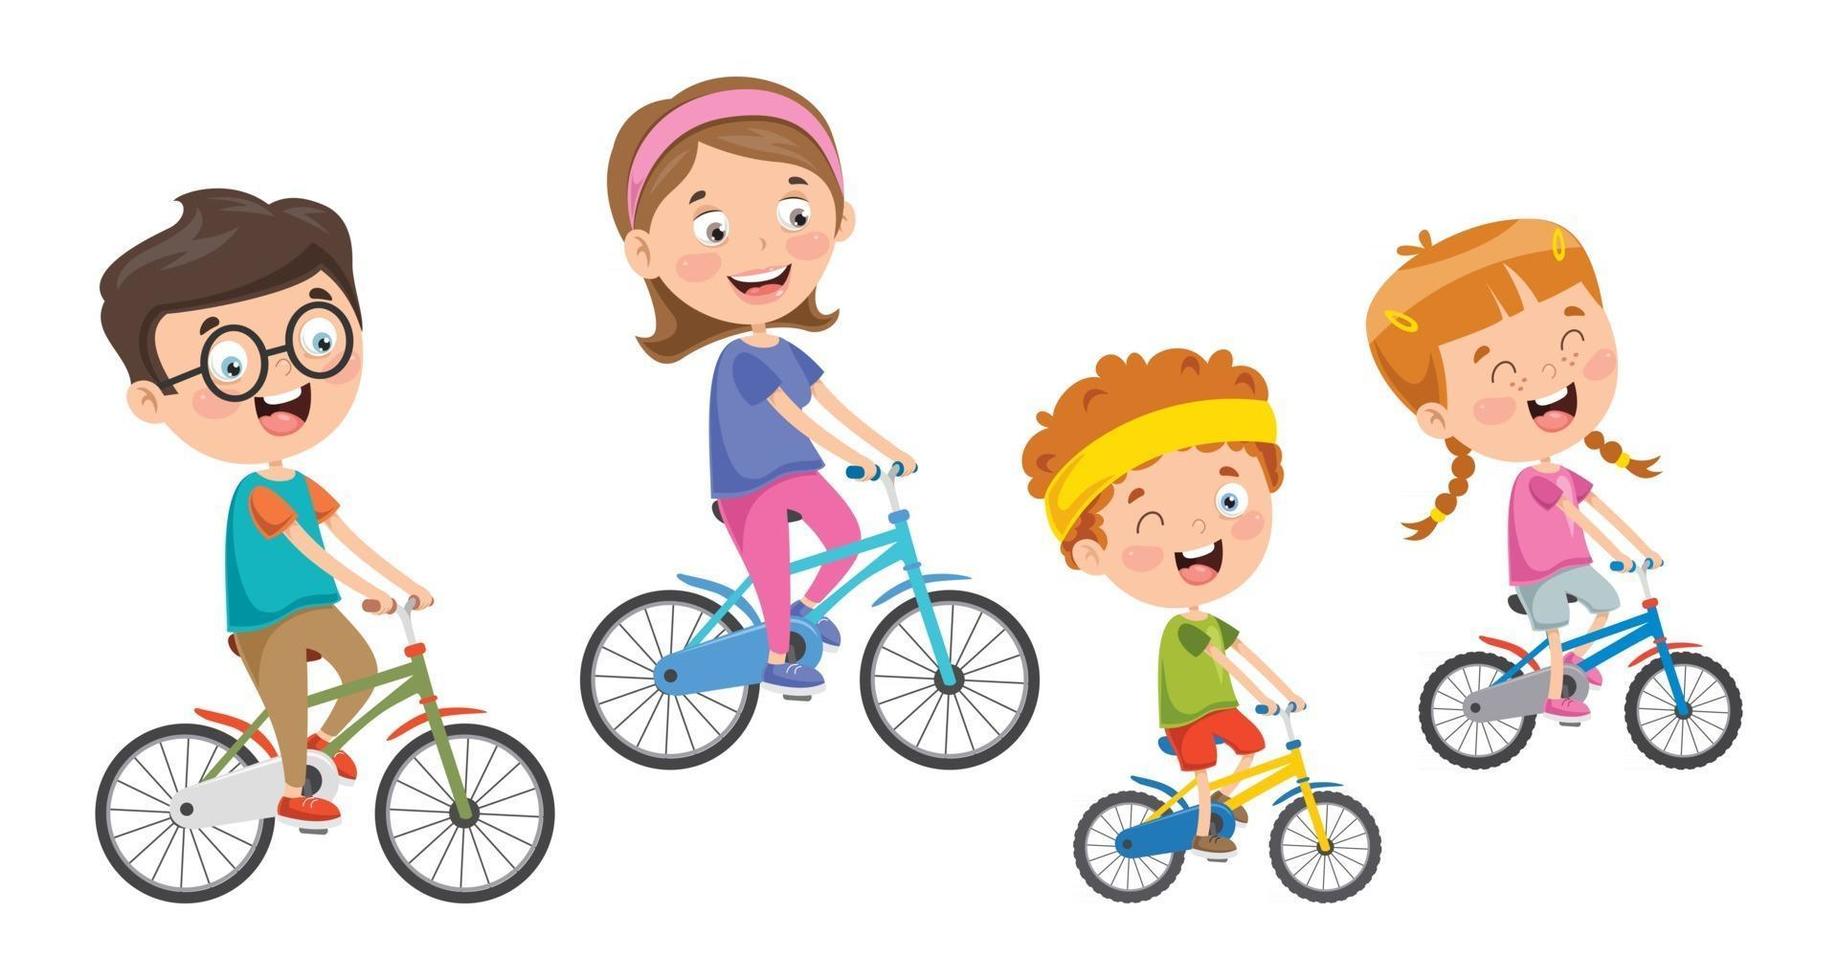 familia feliz montando bicicleta juntos vector